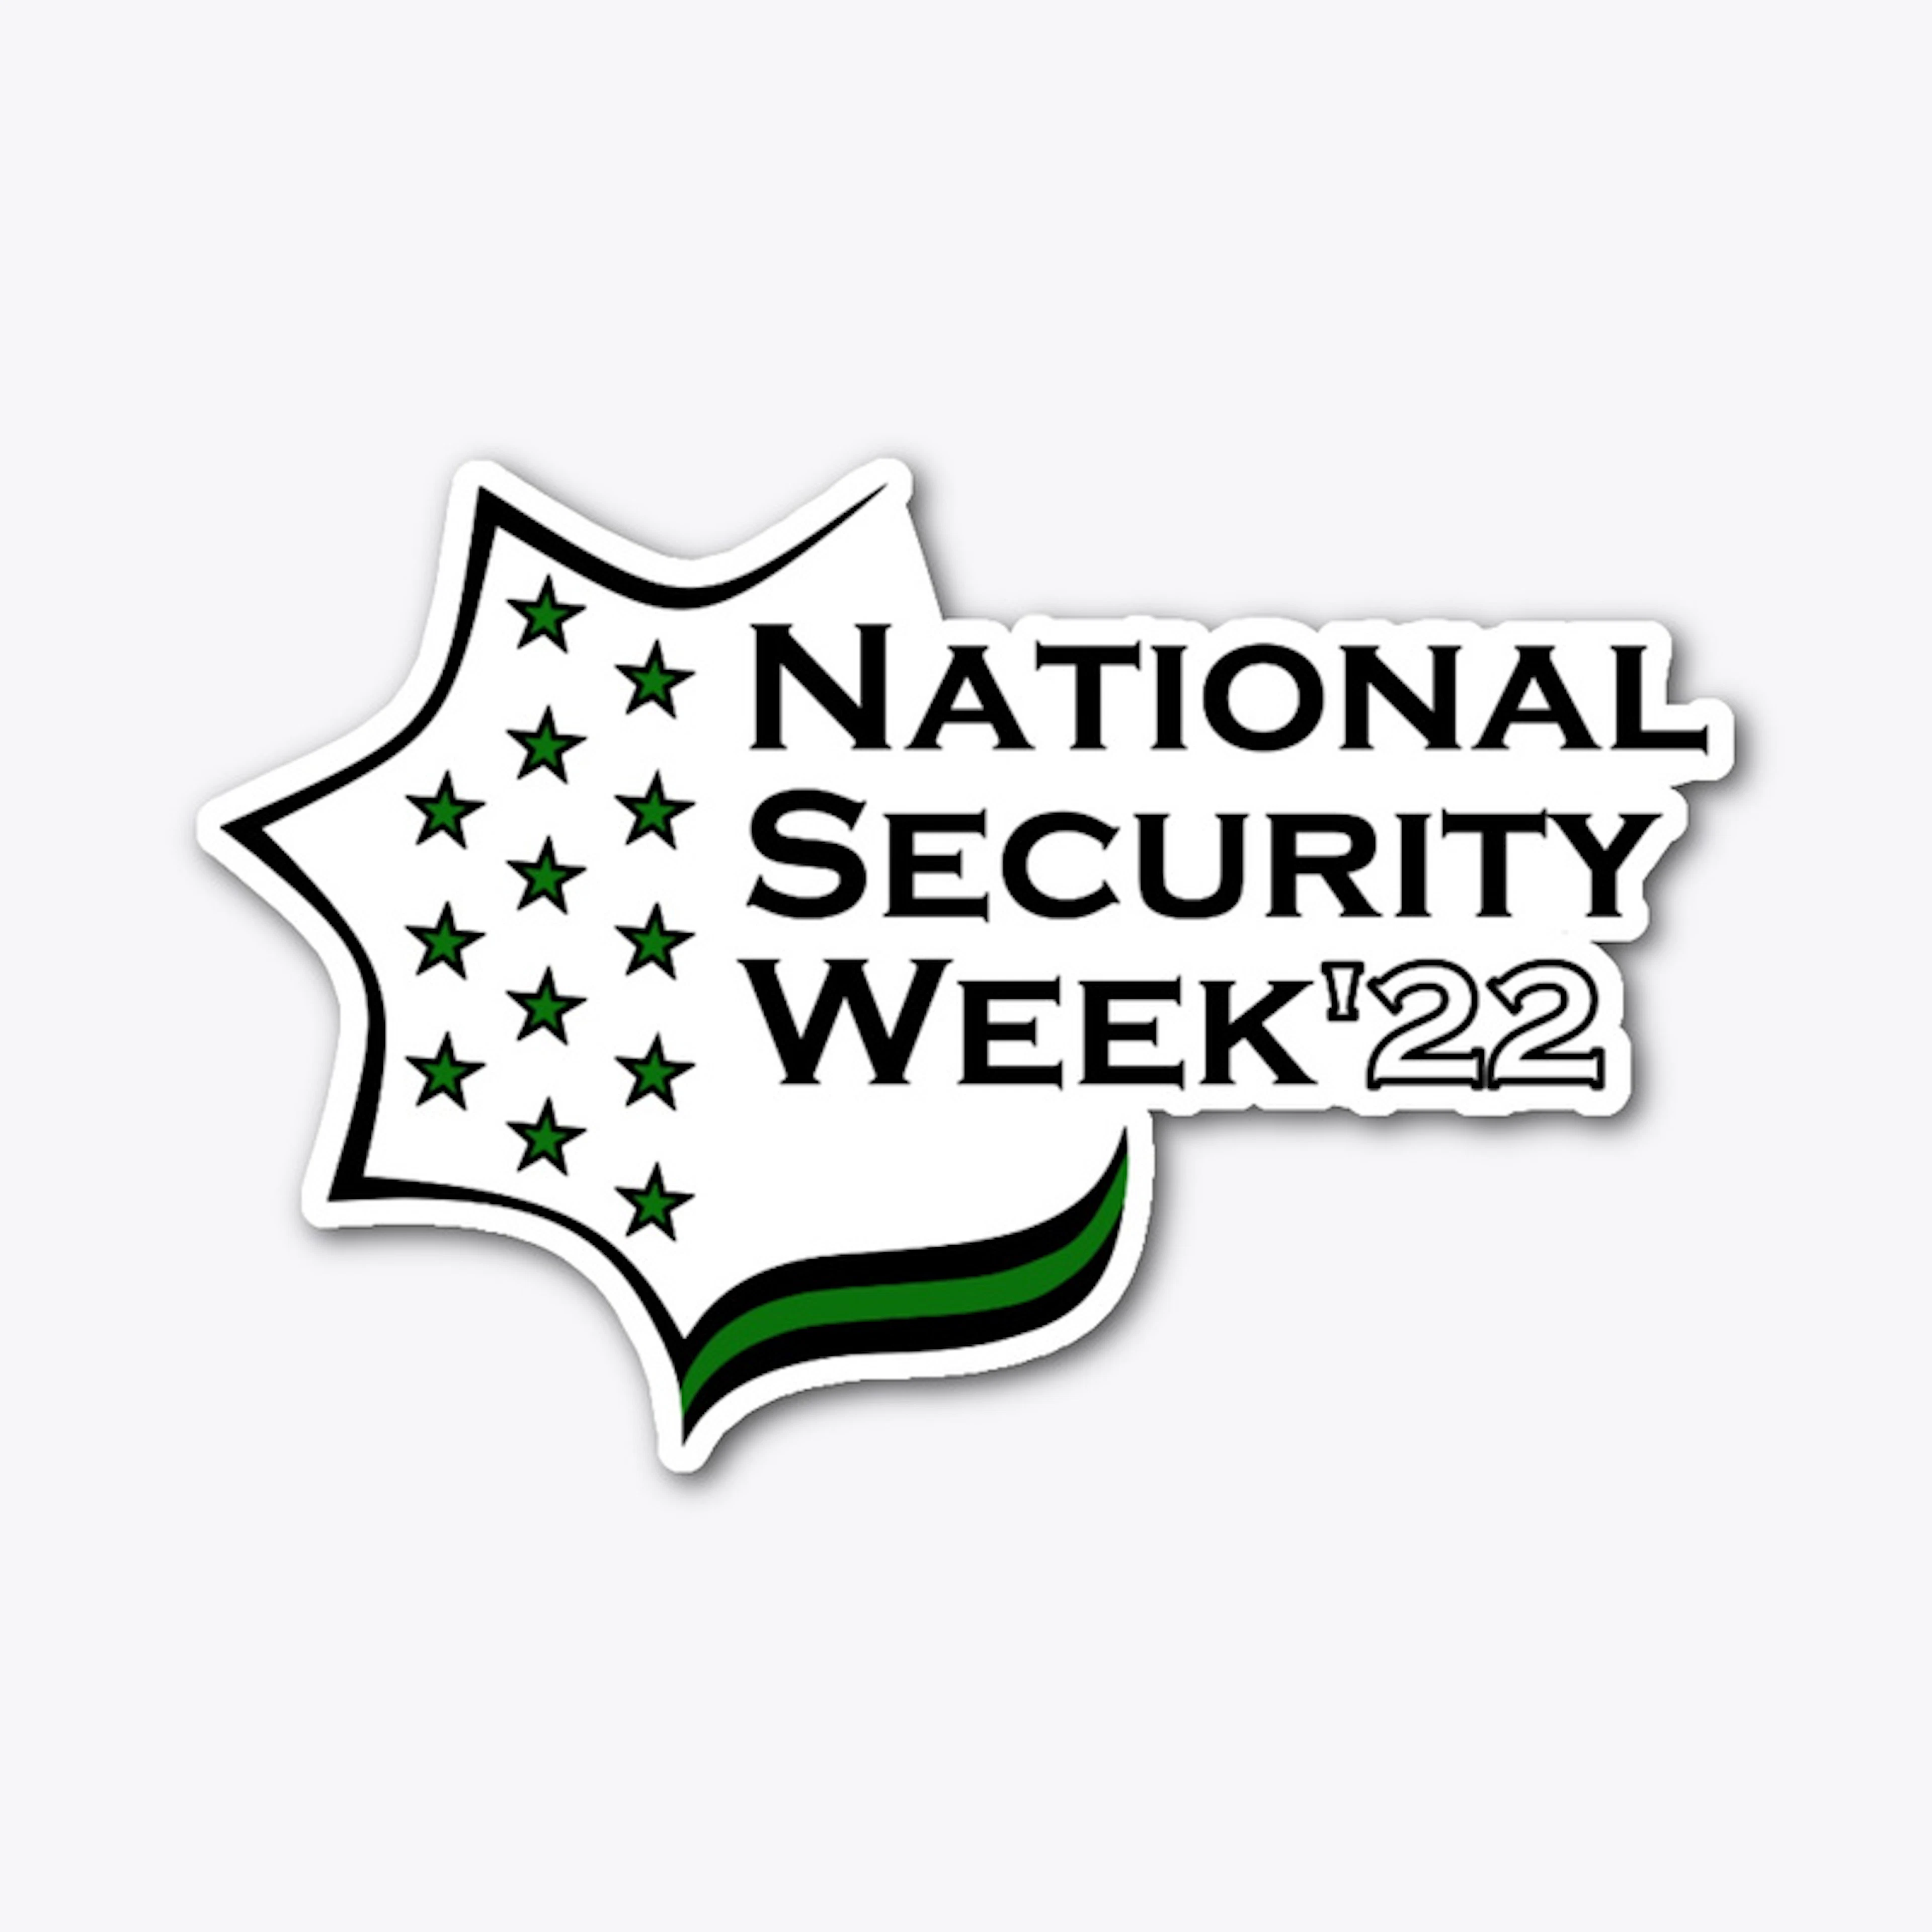 National Security Week 2022